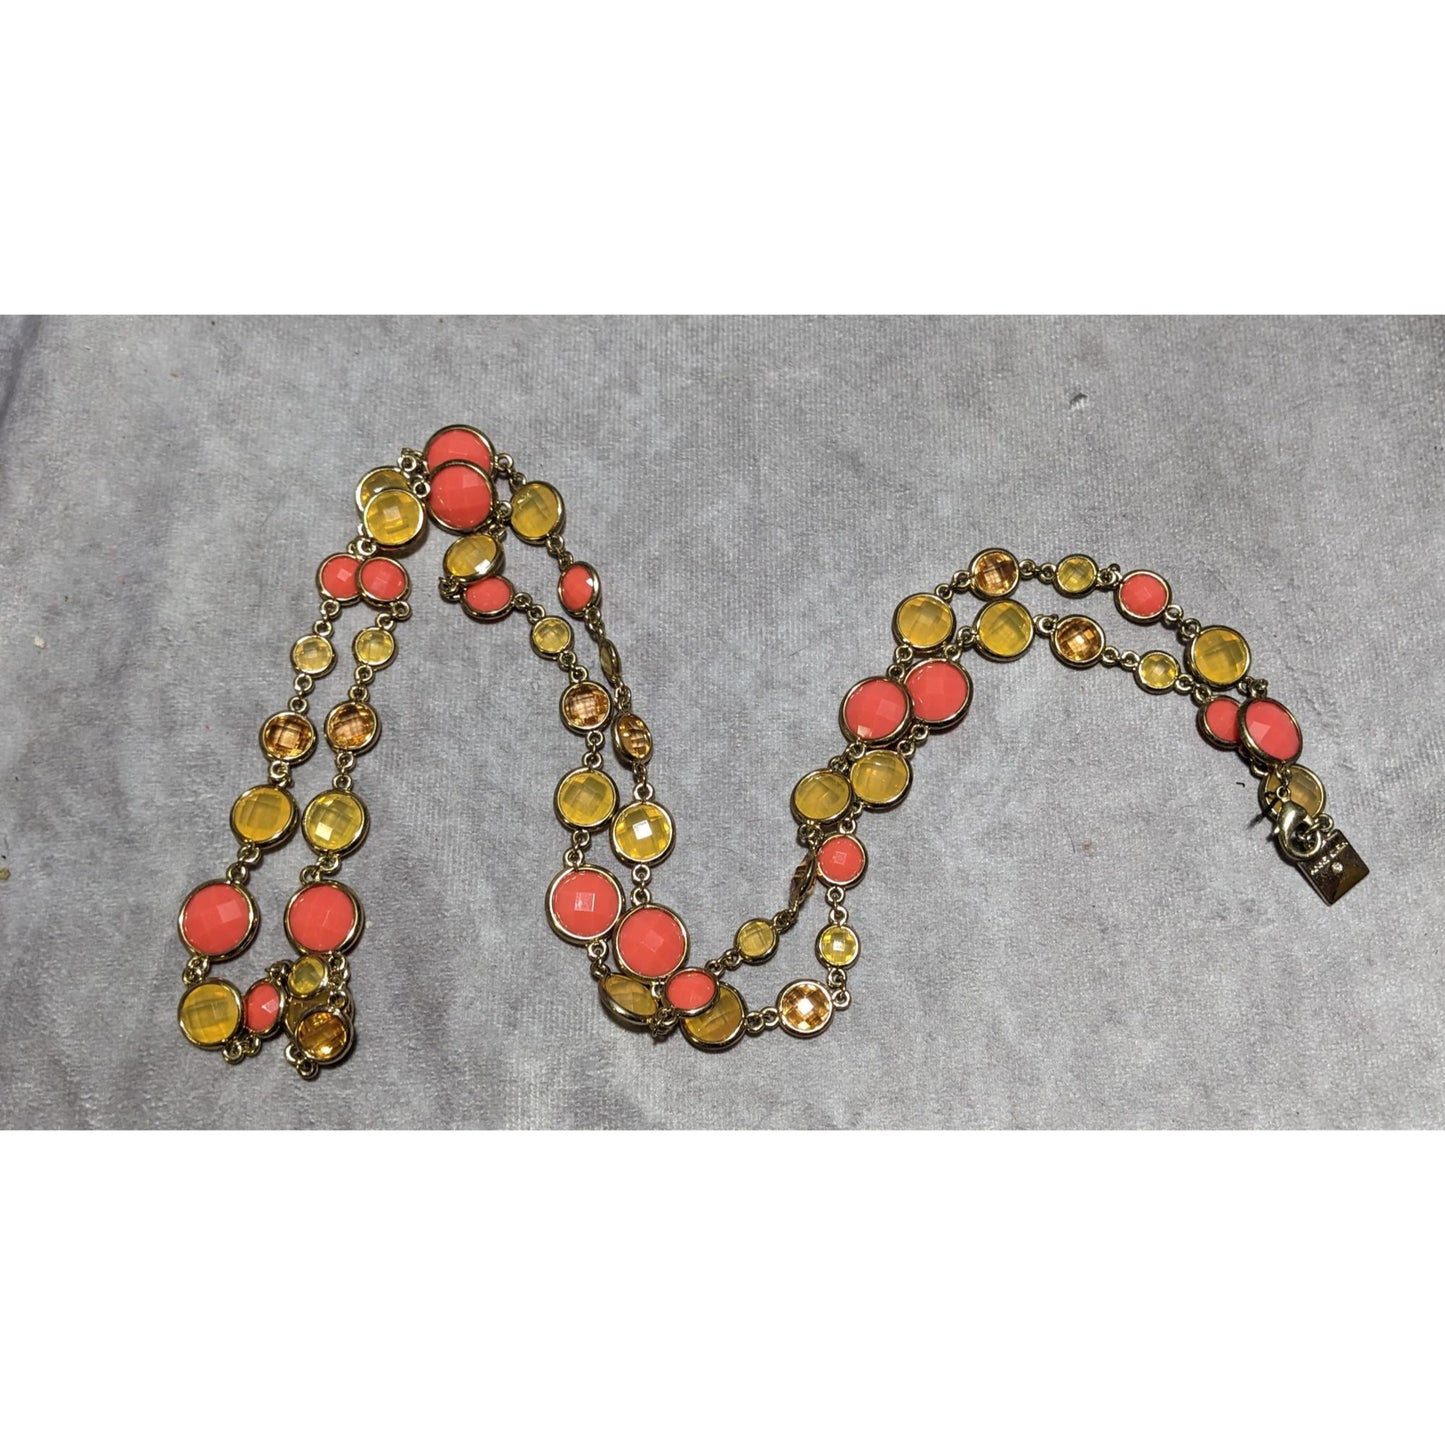 Anne Klein 60s Style Gem Necklace